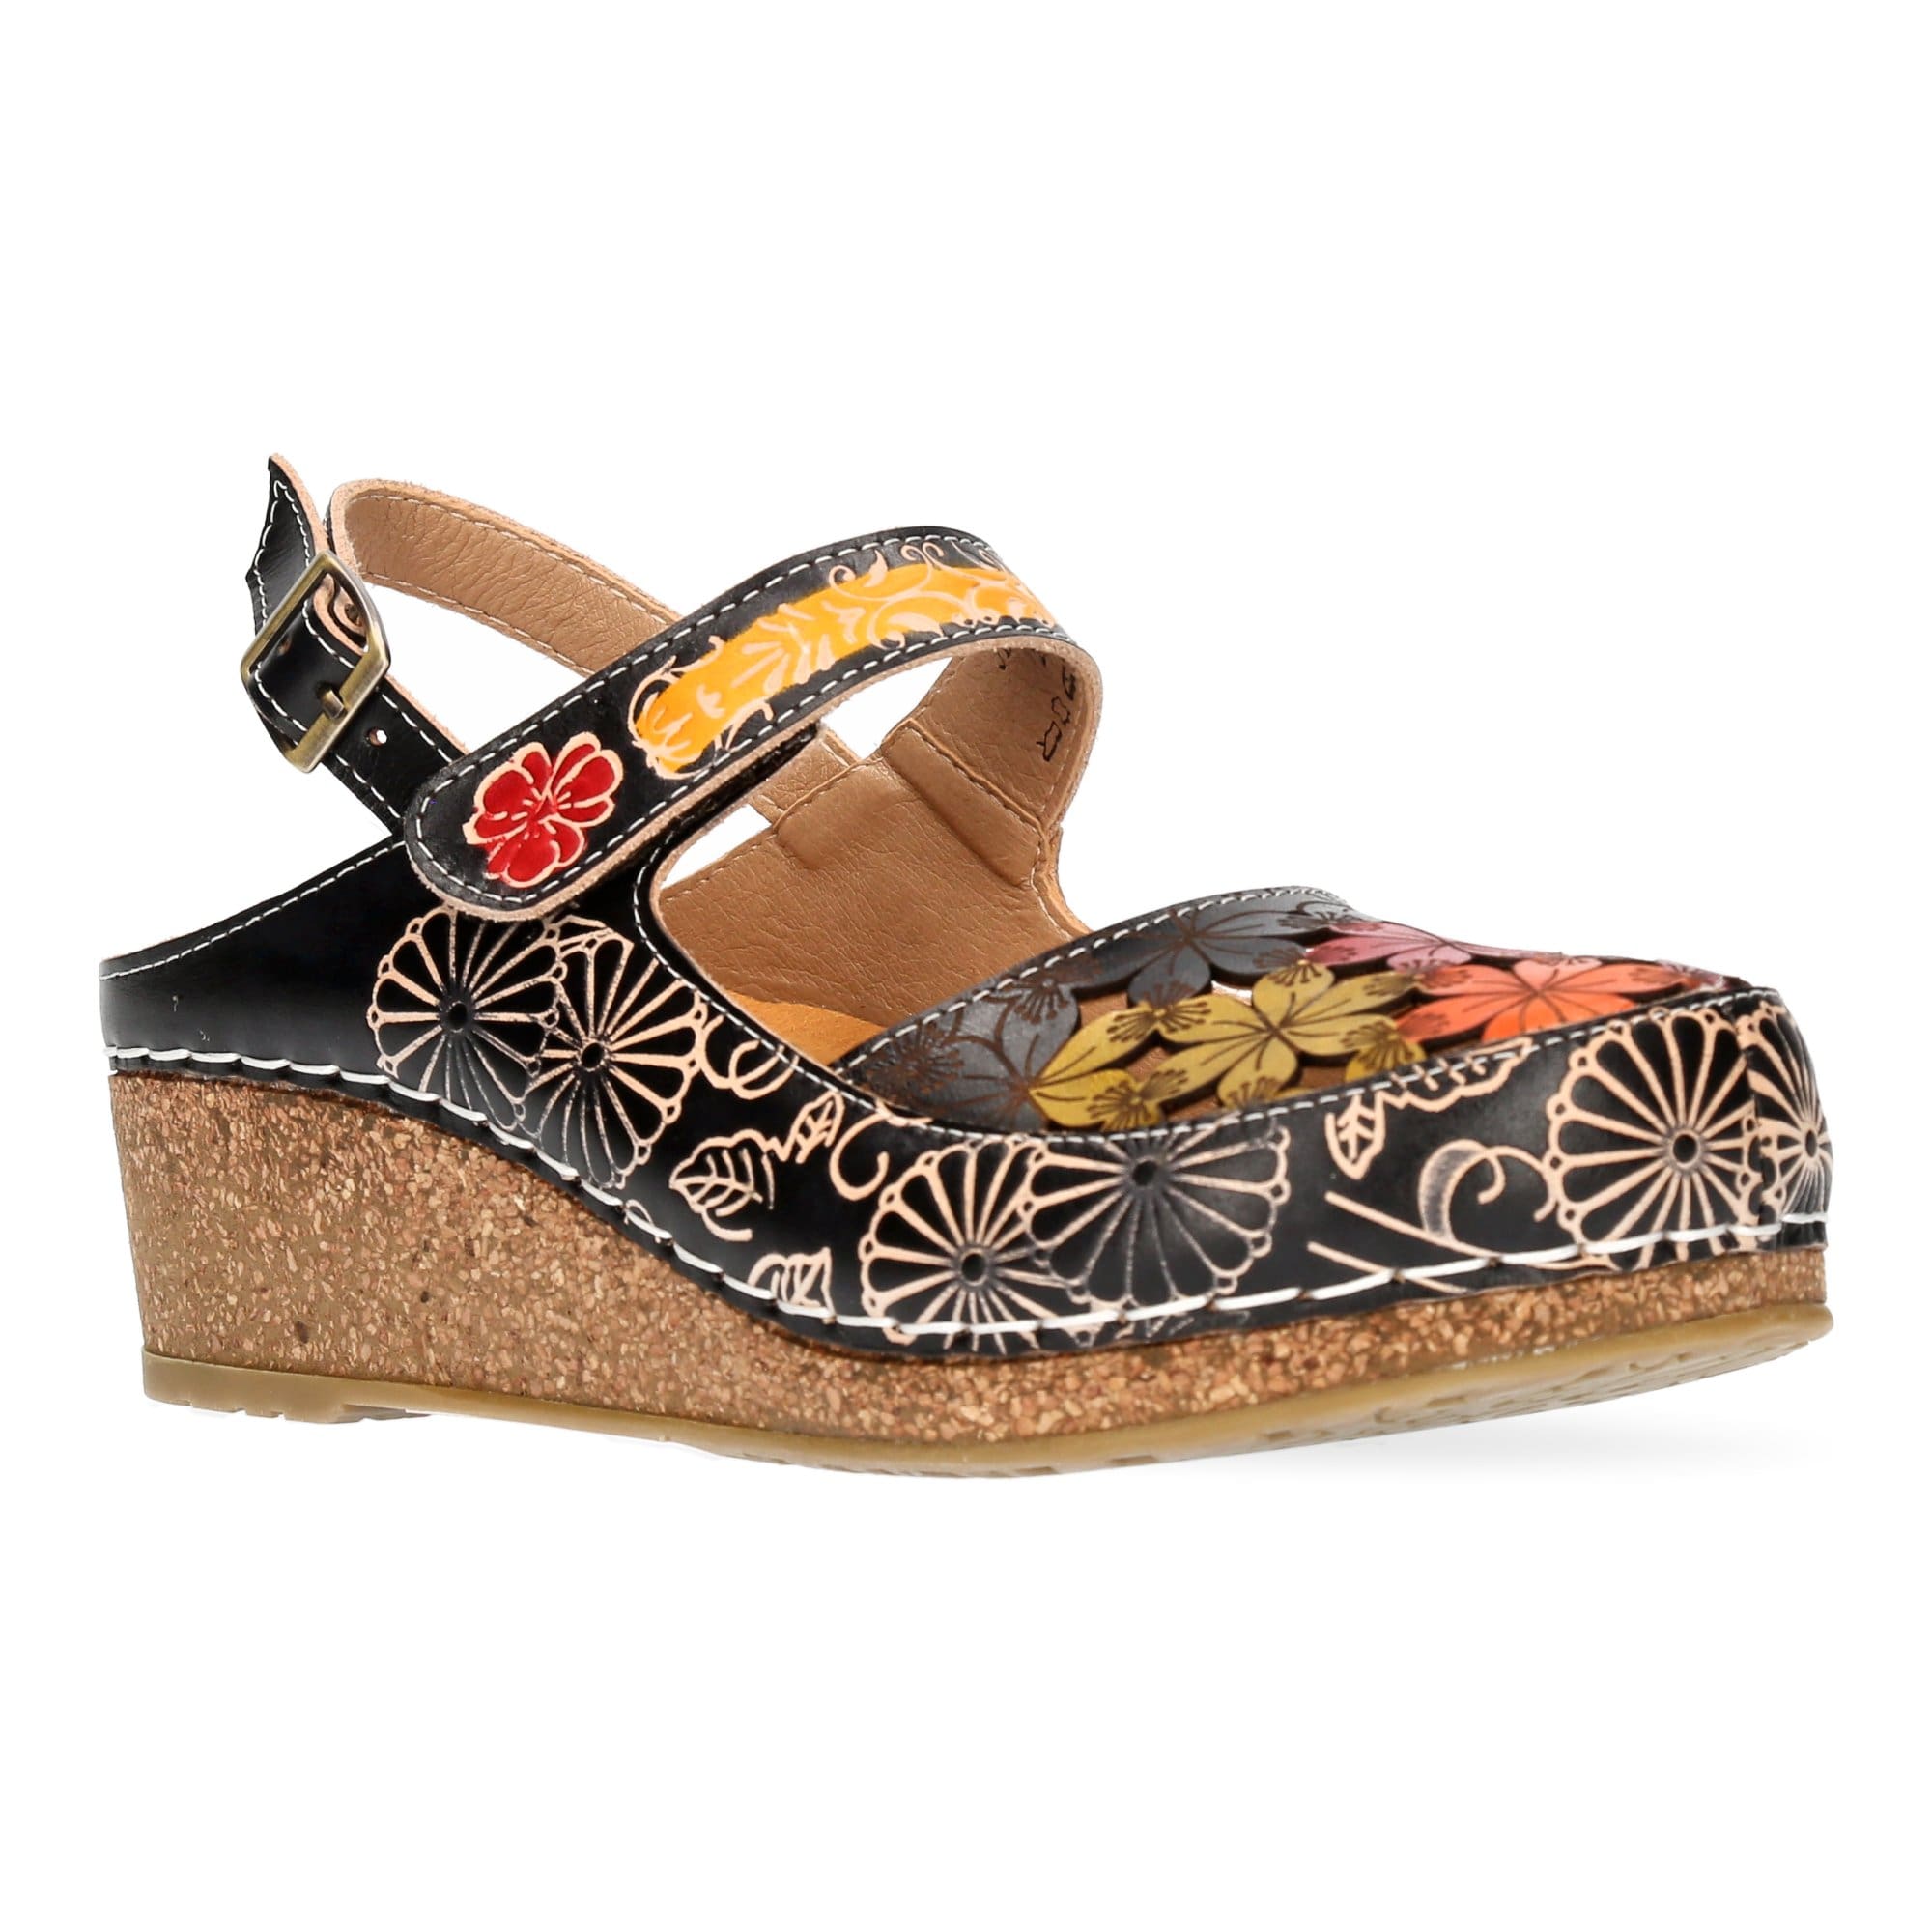 FACSCINEO 0121 Shoes - Sandal